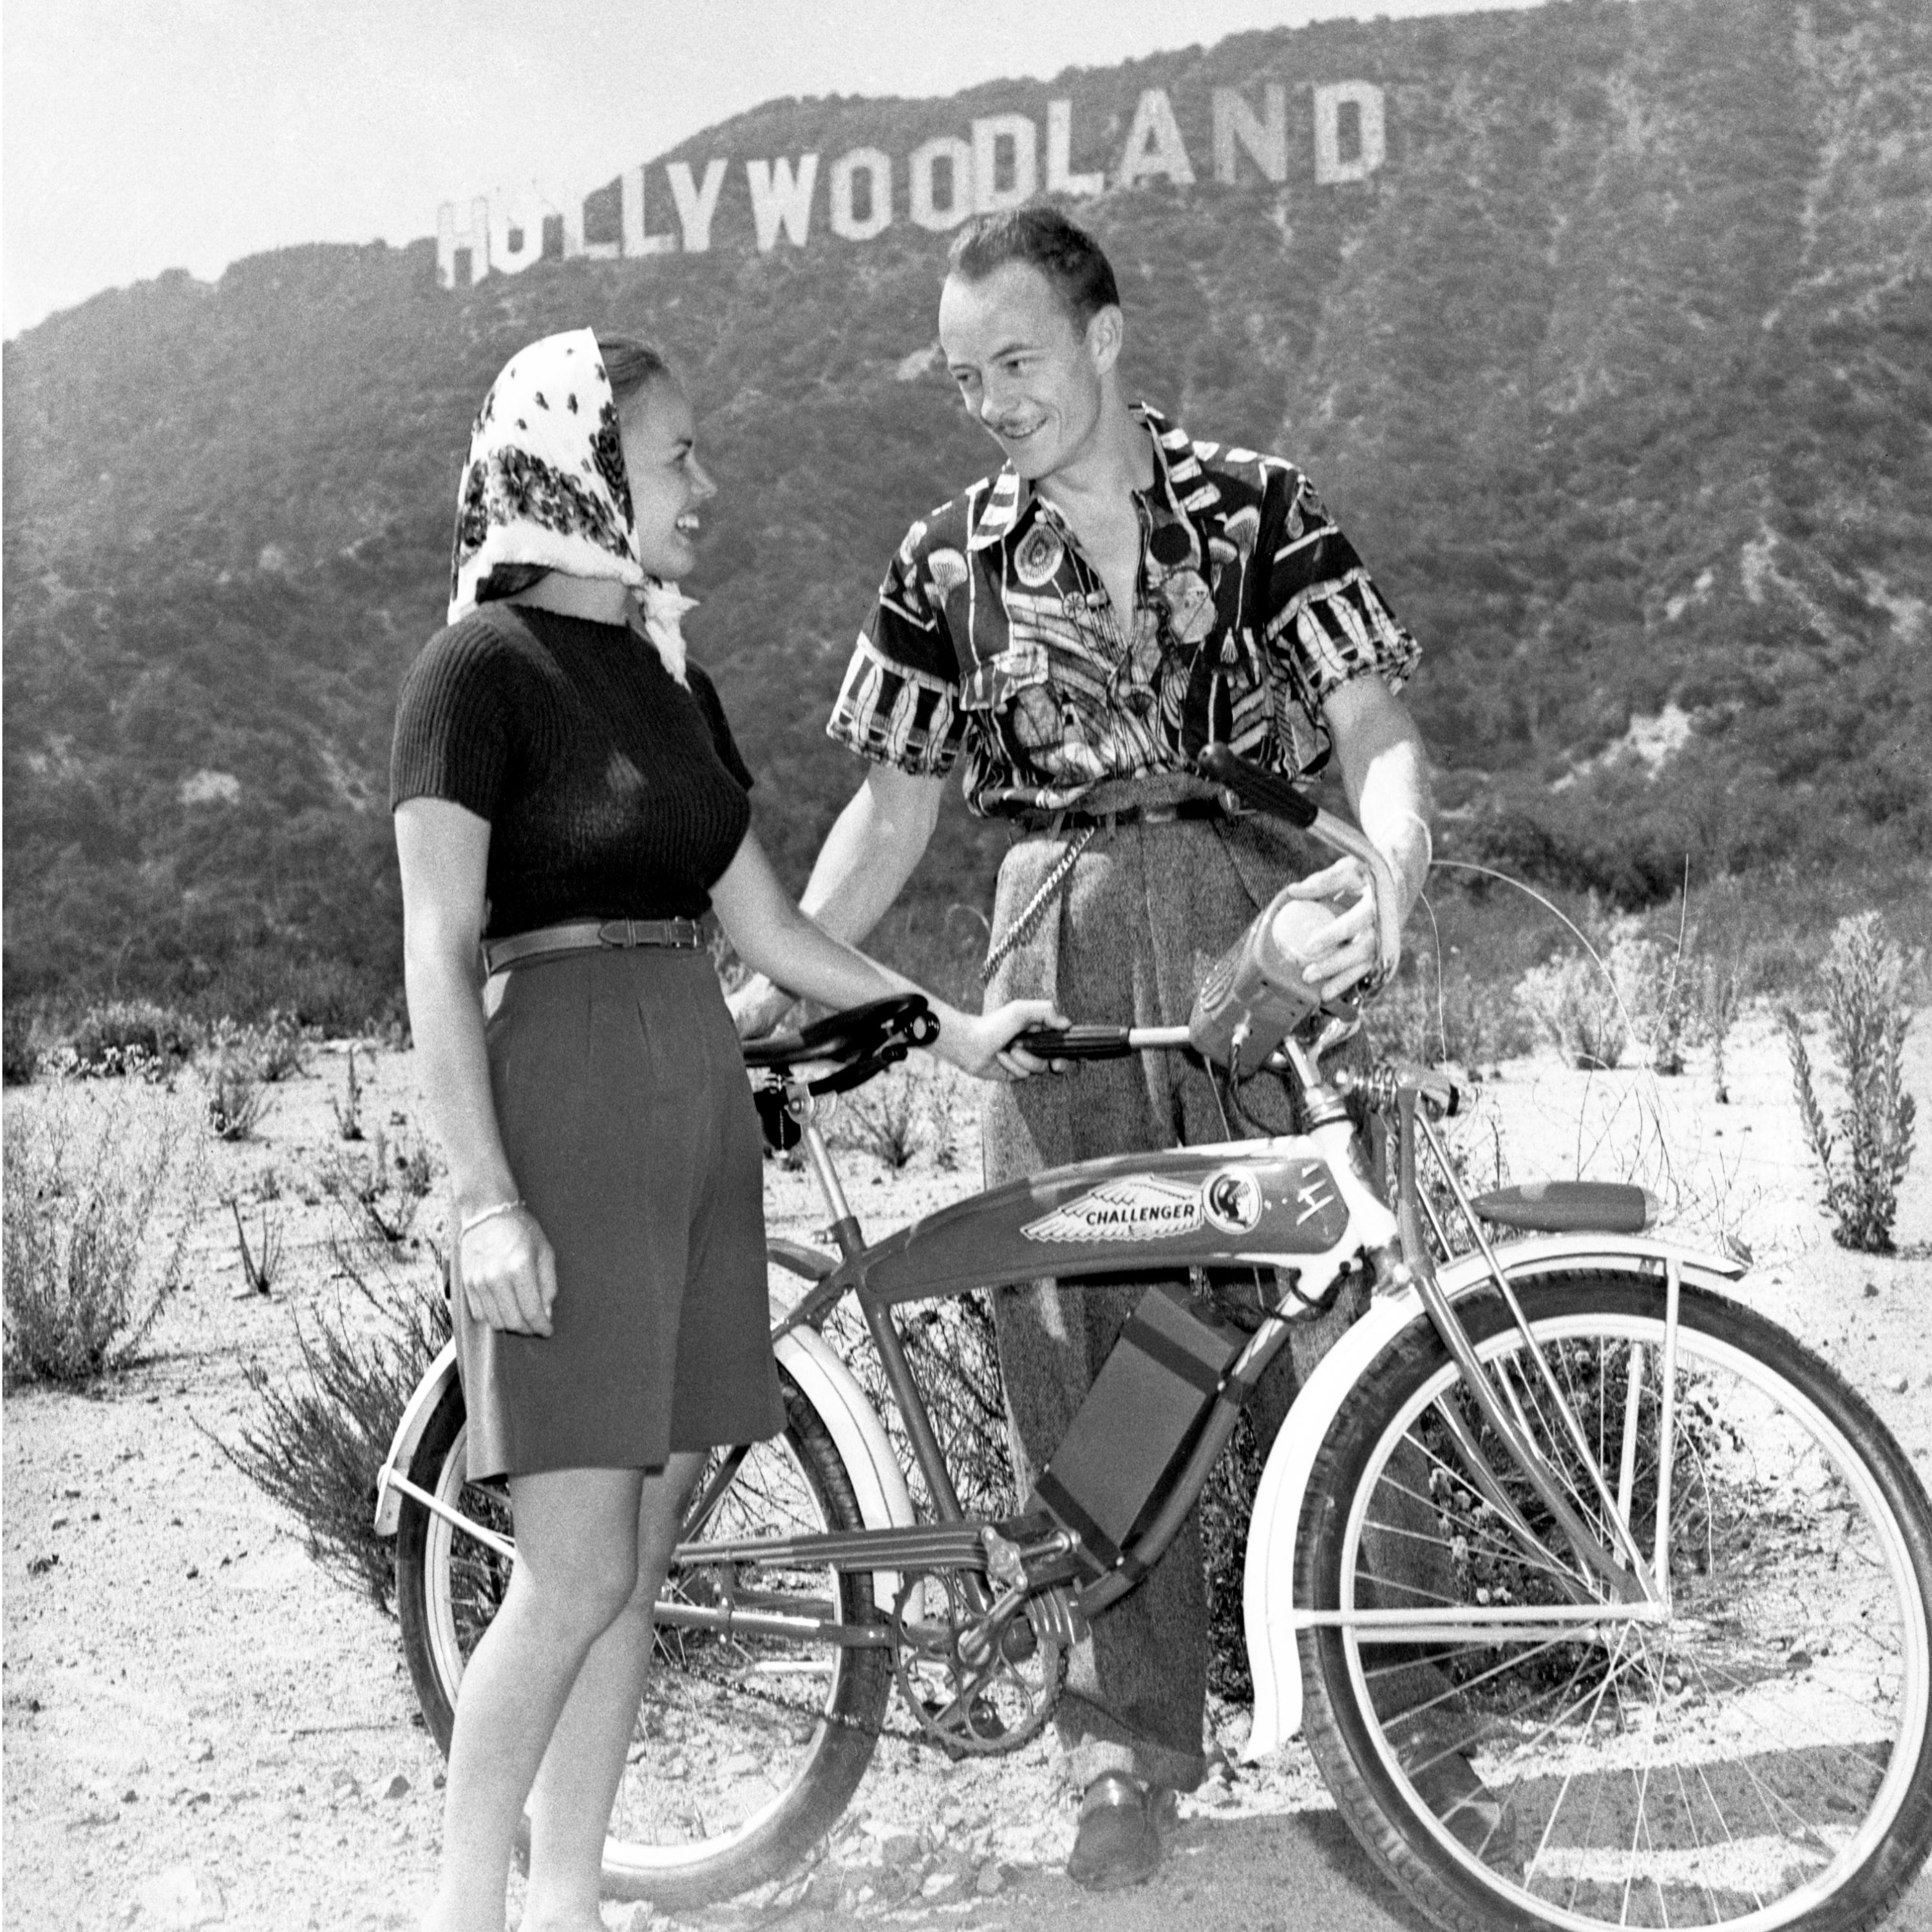 Les Tremayne aus der Sendung „First Nighter“ von CBS Radio und seine Frau (die ehemalige Eileen Palmer) mit ihren Fahrrädern in den Hollywood Hills, mit dem Hollywoodland-Schild im Hintergrund;  3. August 1940.